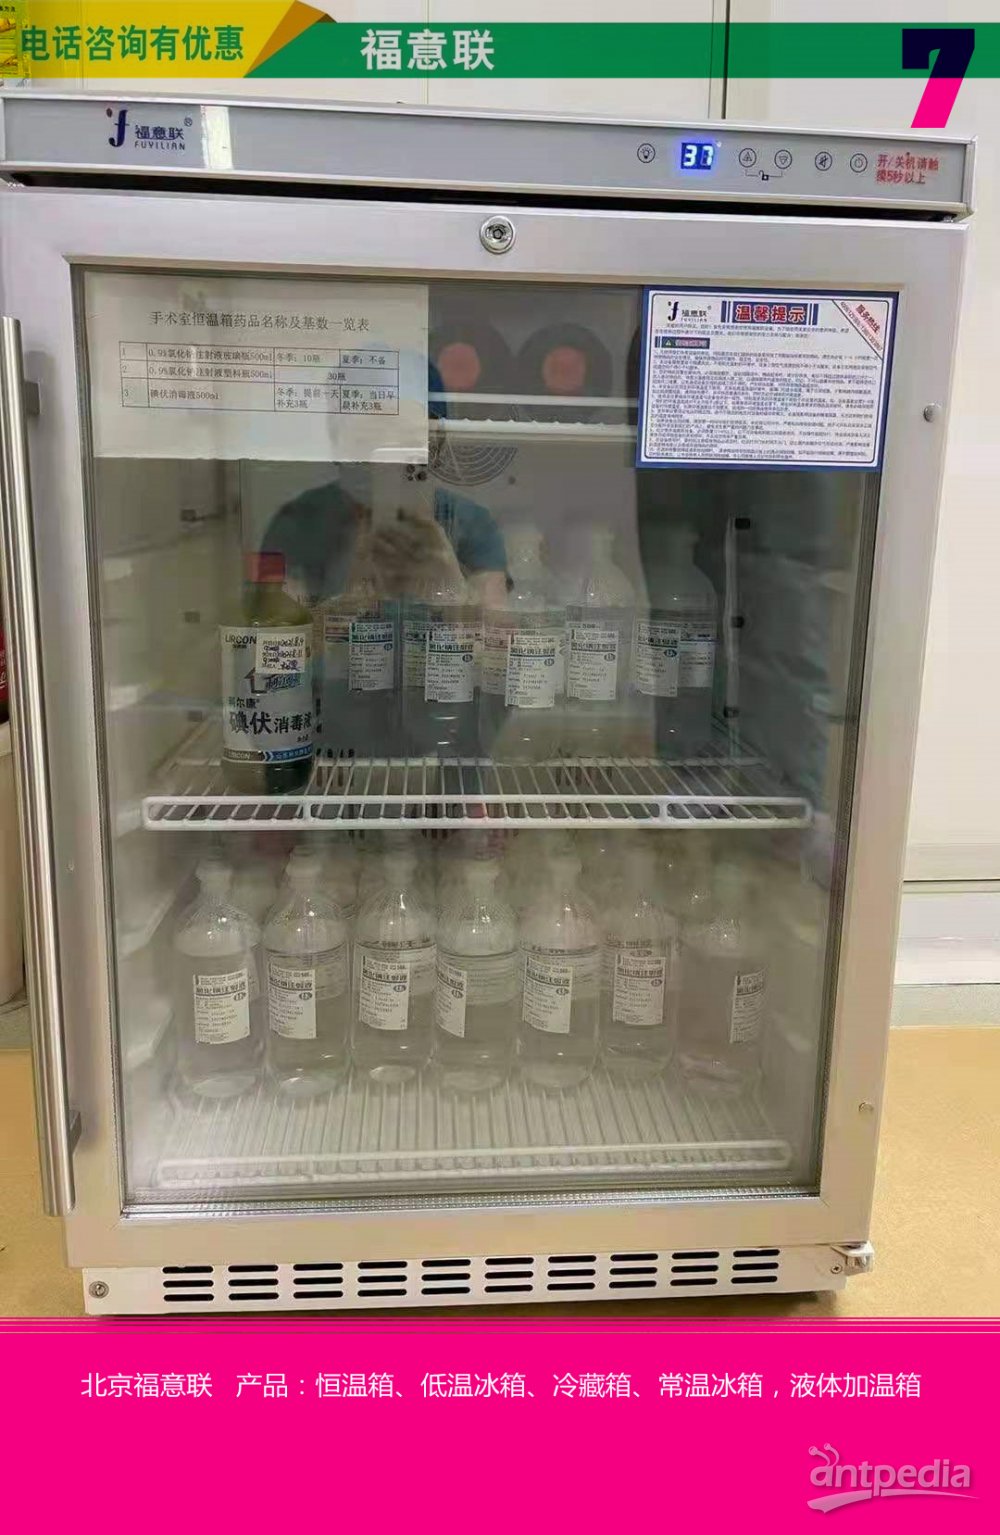 剂型:注射用溶液试剂储存用冰箱FYL-YS-100E